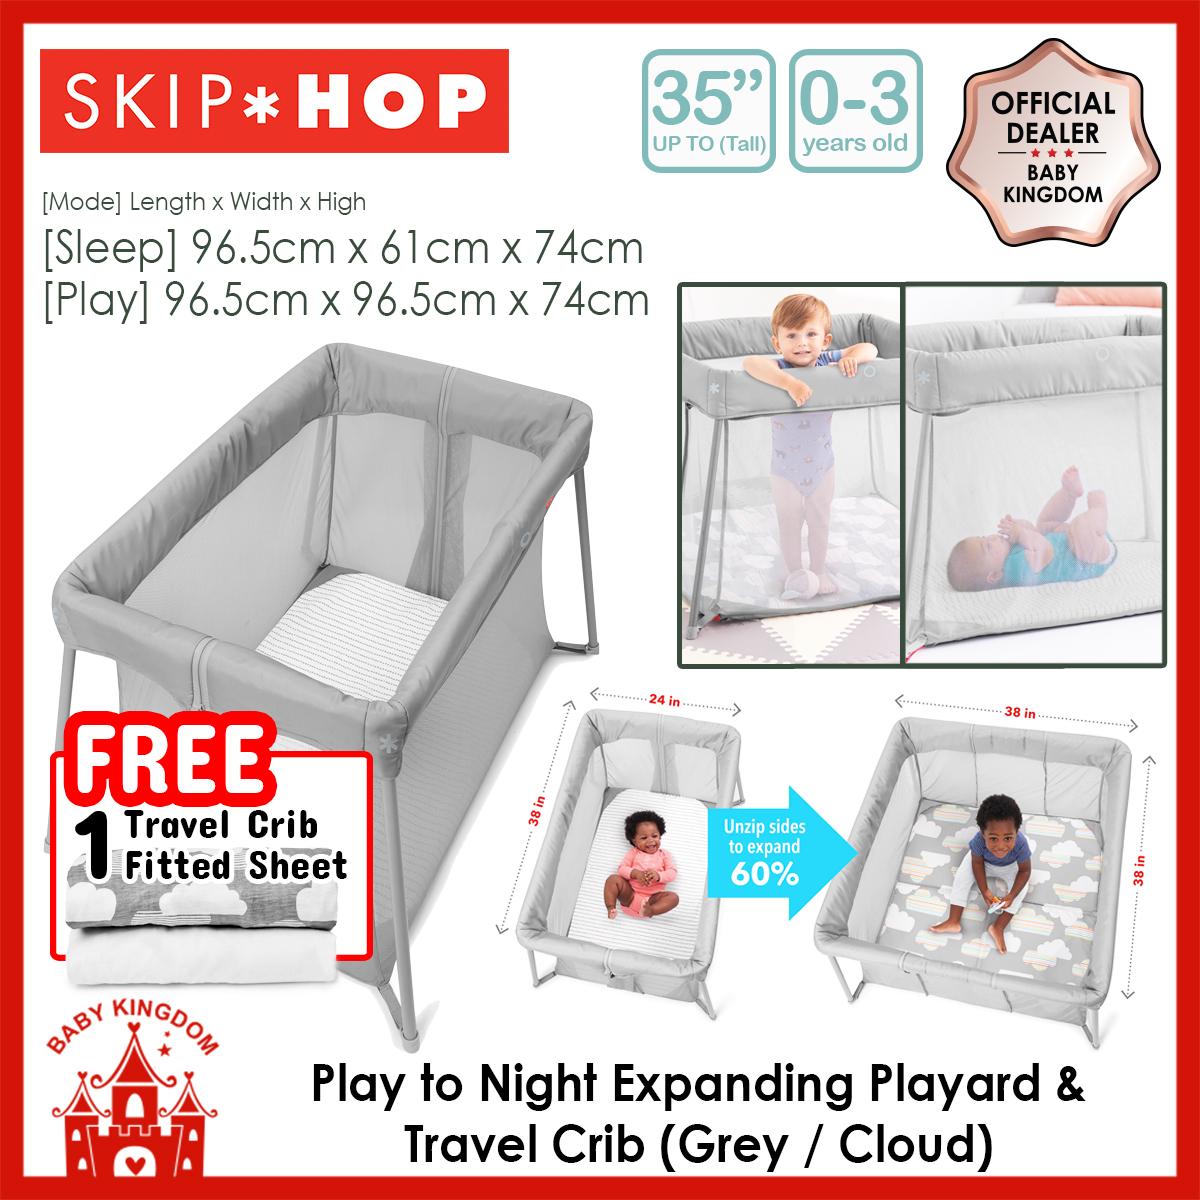 skip hop travel crib